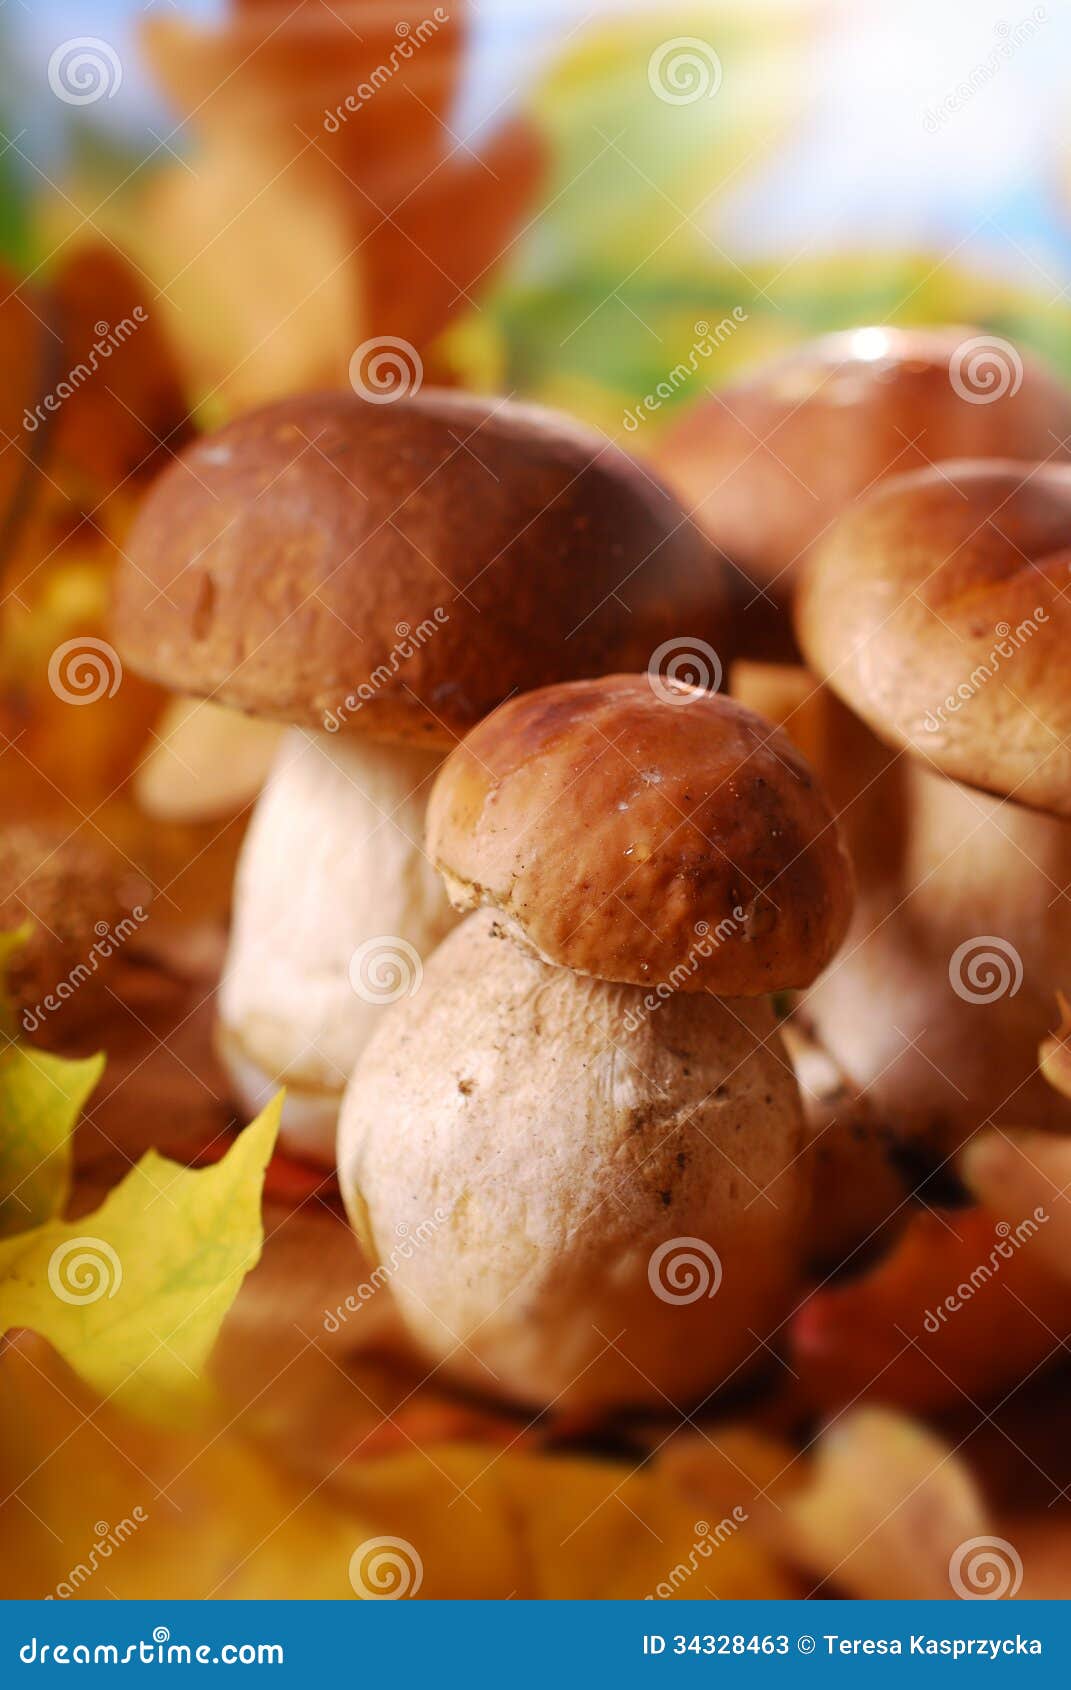 两个年轻夏天等概率圆蘑菇 库存图片. 图片 包括有 陆运, 特写镜头, 夏令时, 蘑菇, 空白, 橙色, 可食用 - 42916885